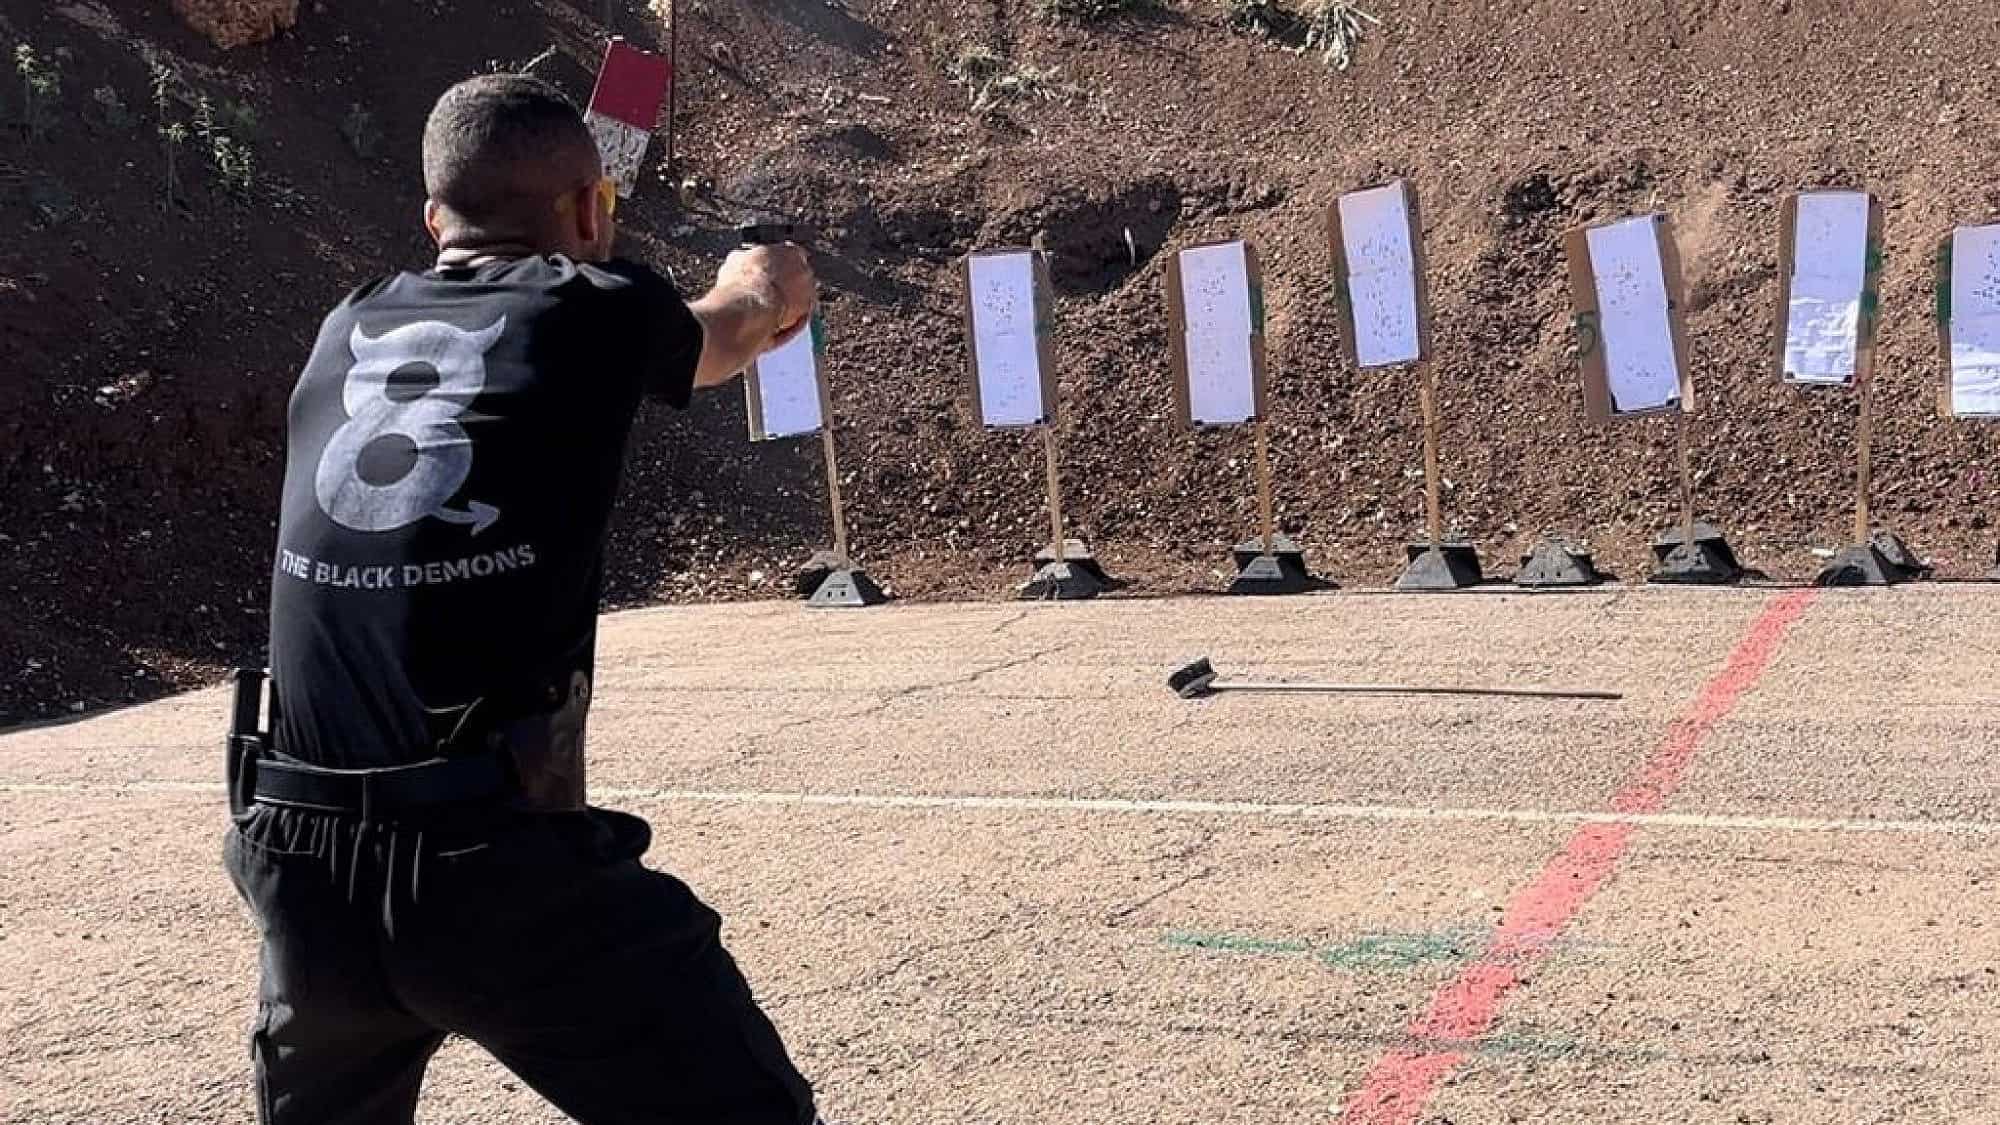 An Israeli at a gun range. Photo by Mor Amar/TPS.